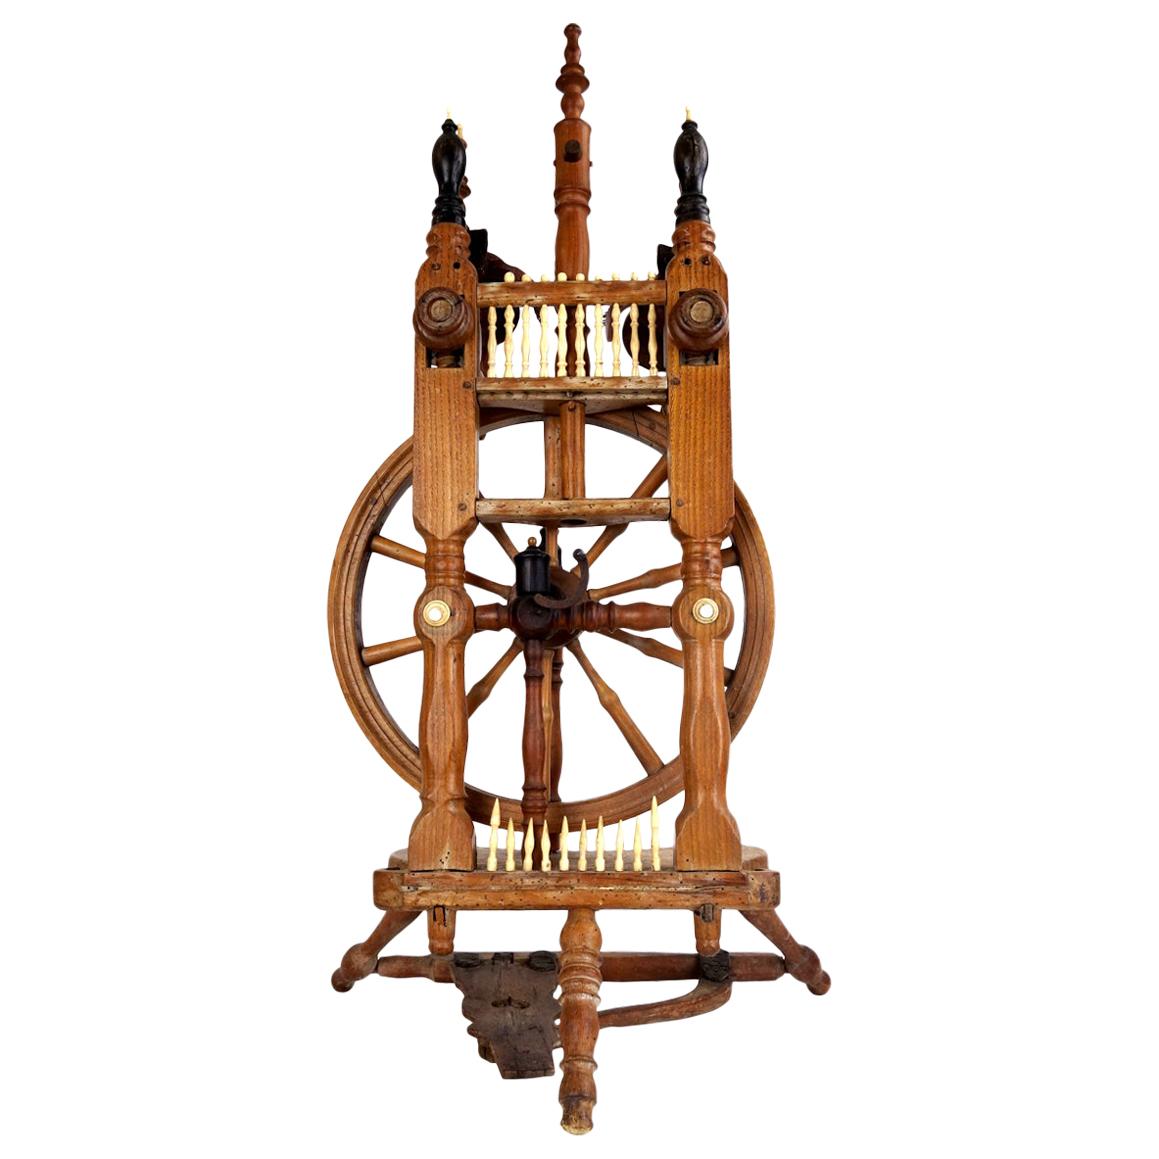 Majestic Spinning Wheel Made of Ebony Wood